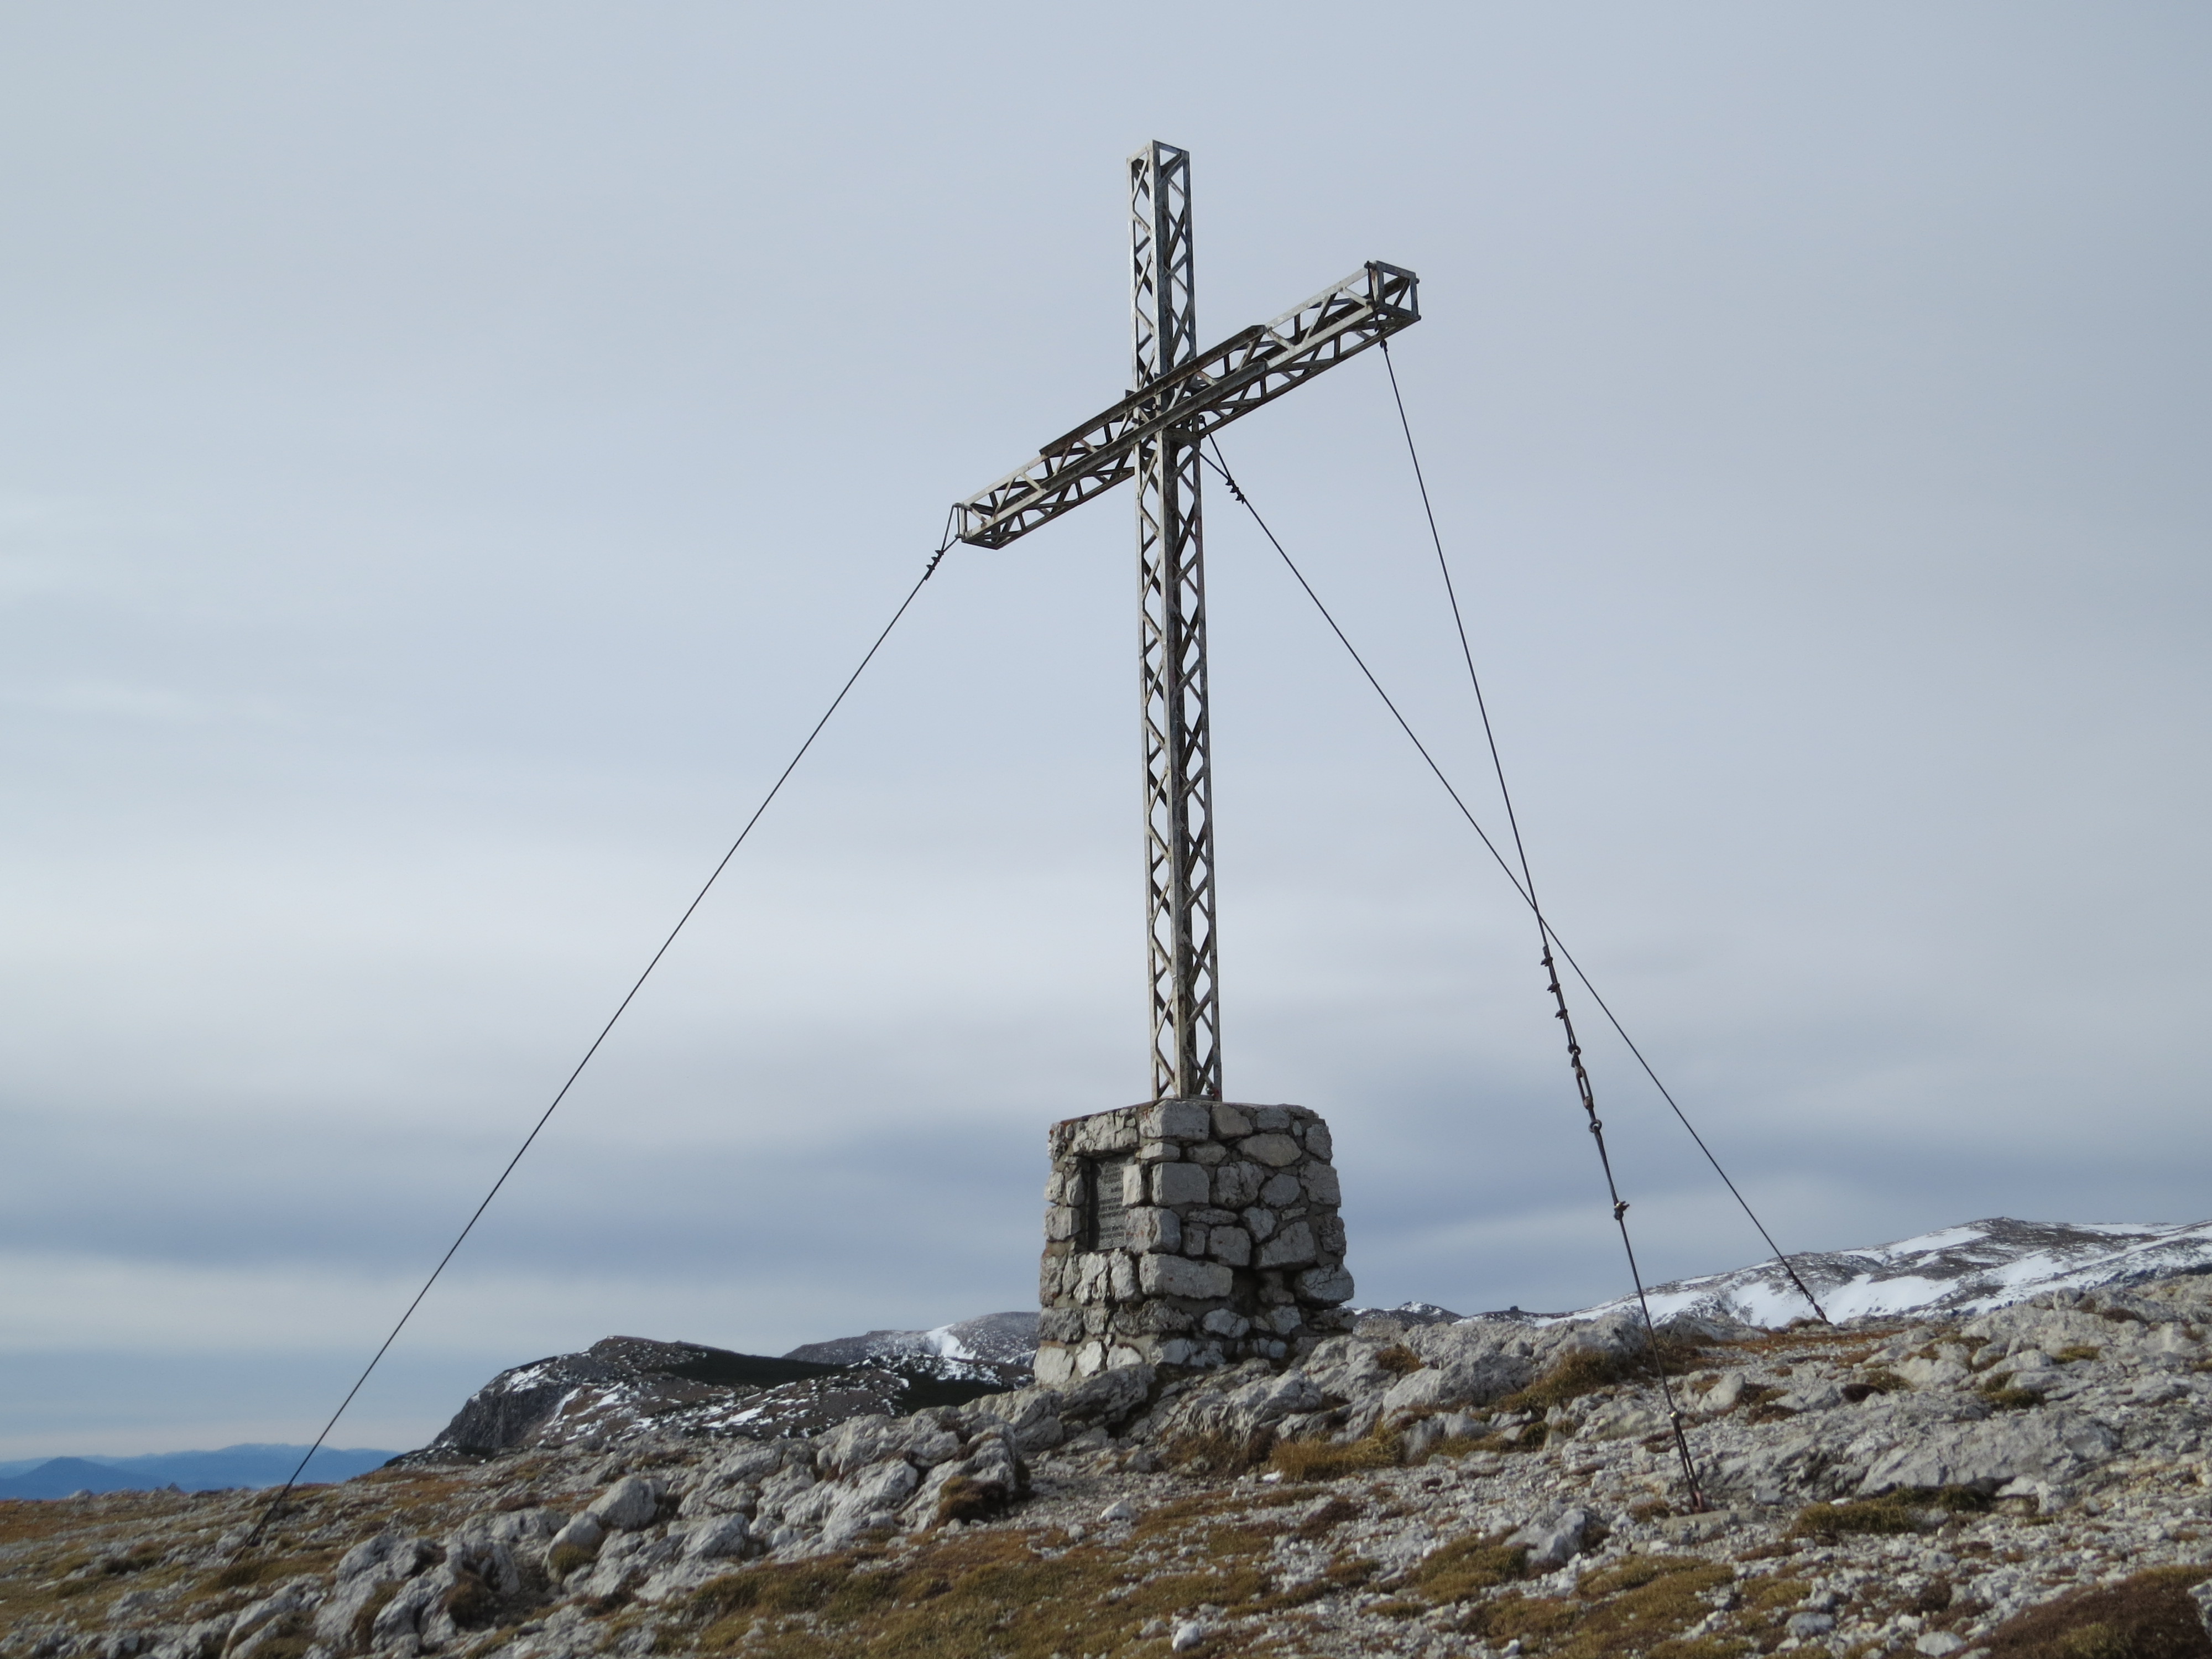 2017-11-02 (367) Summit cross at Jakobskogel, Rax, Austria